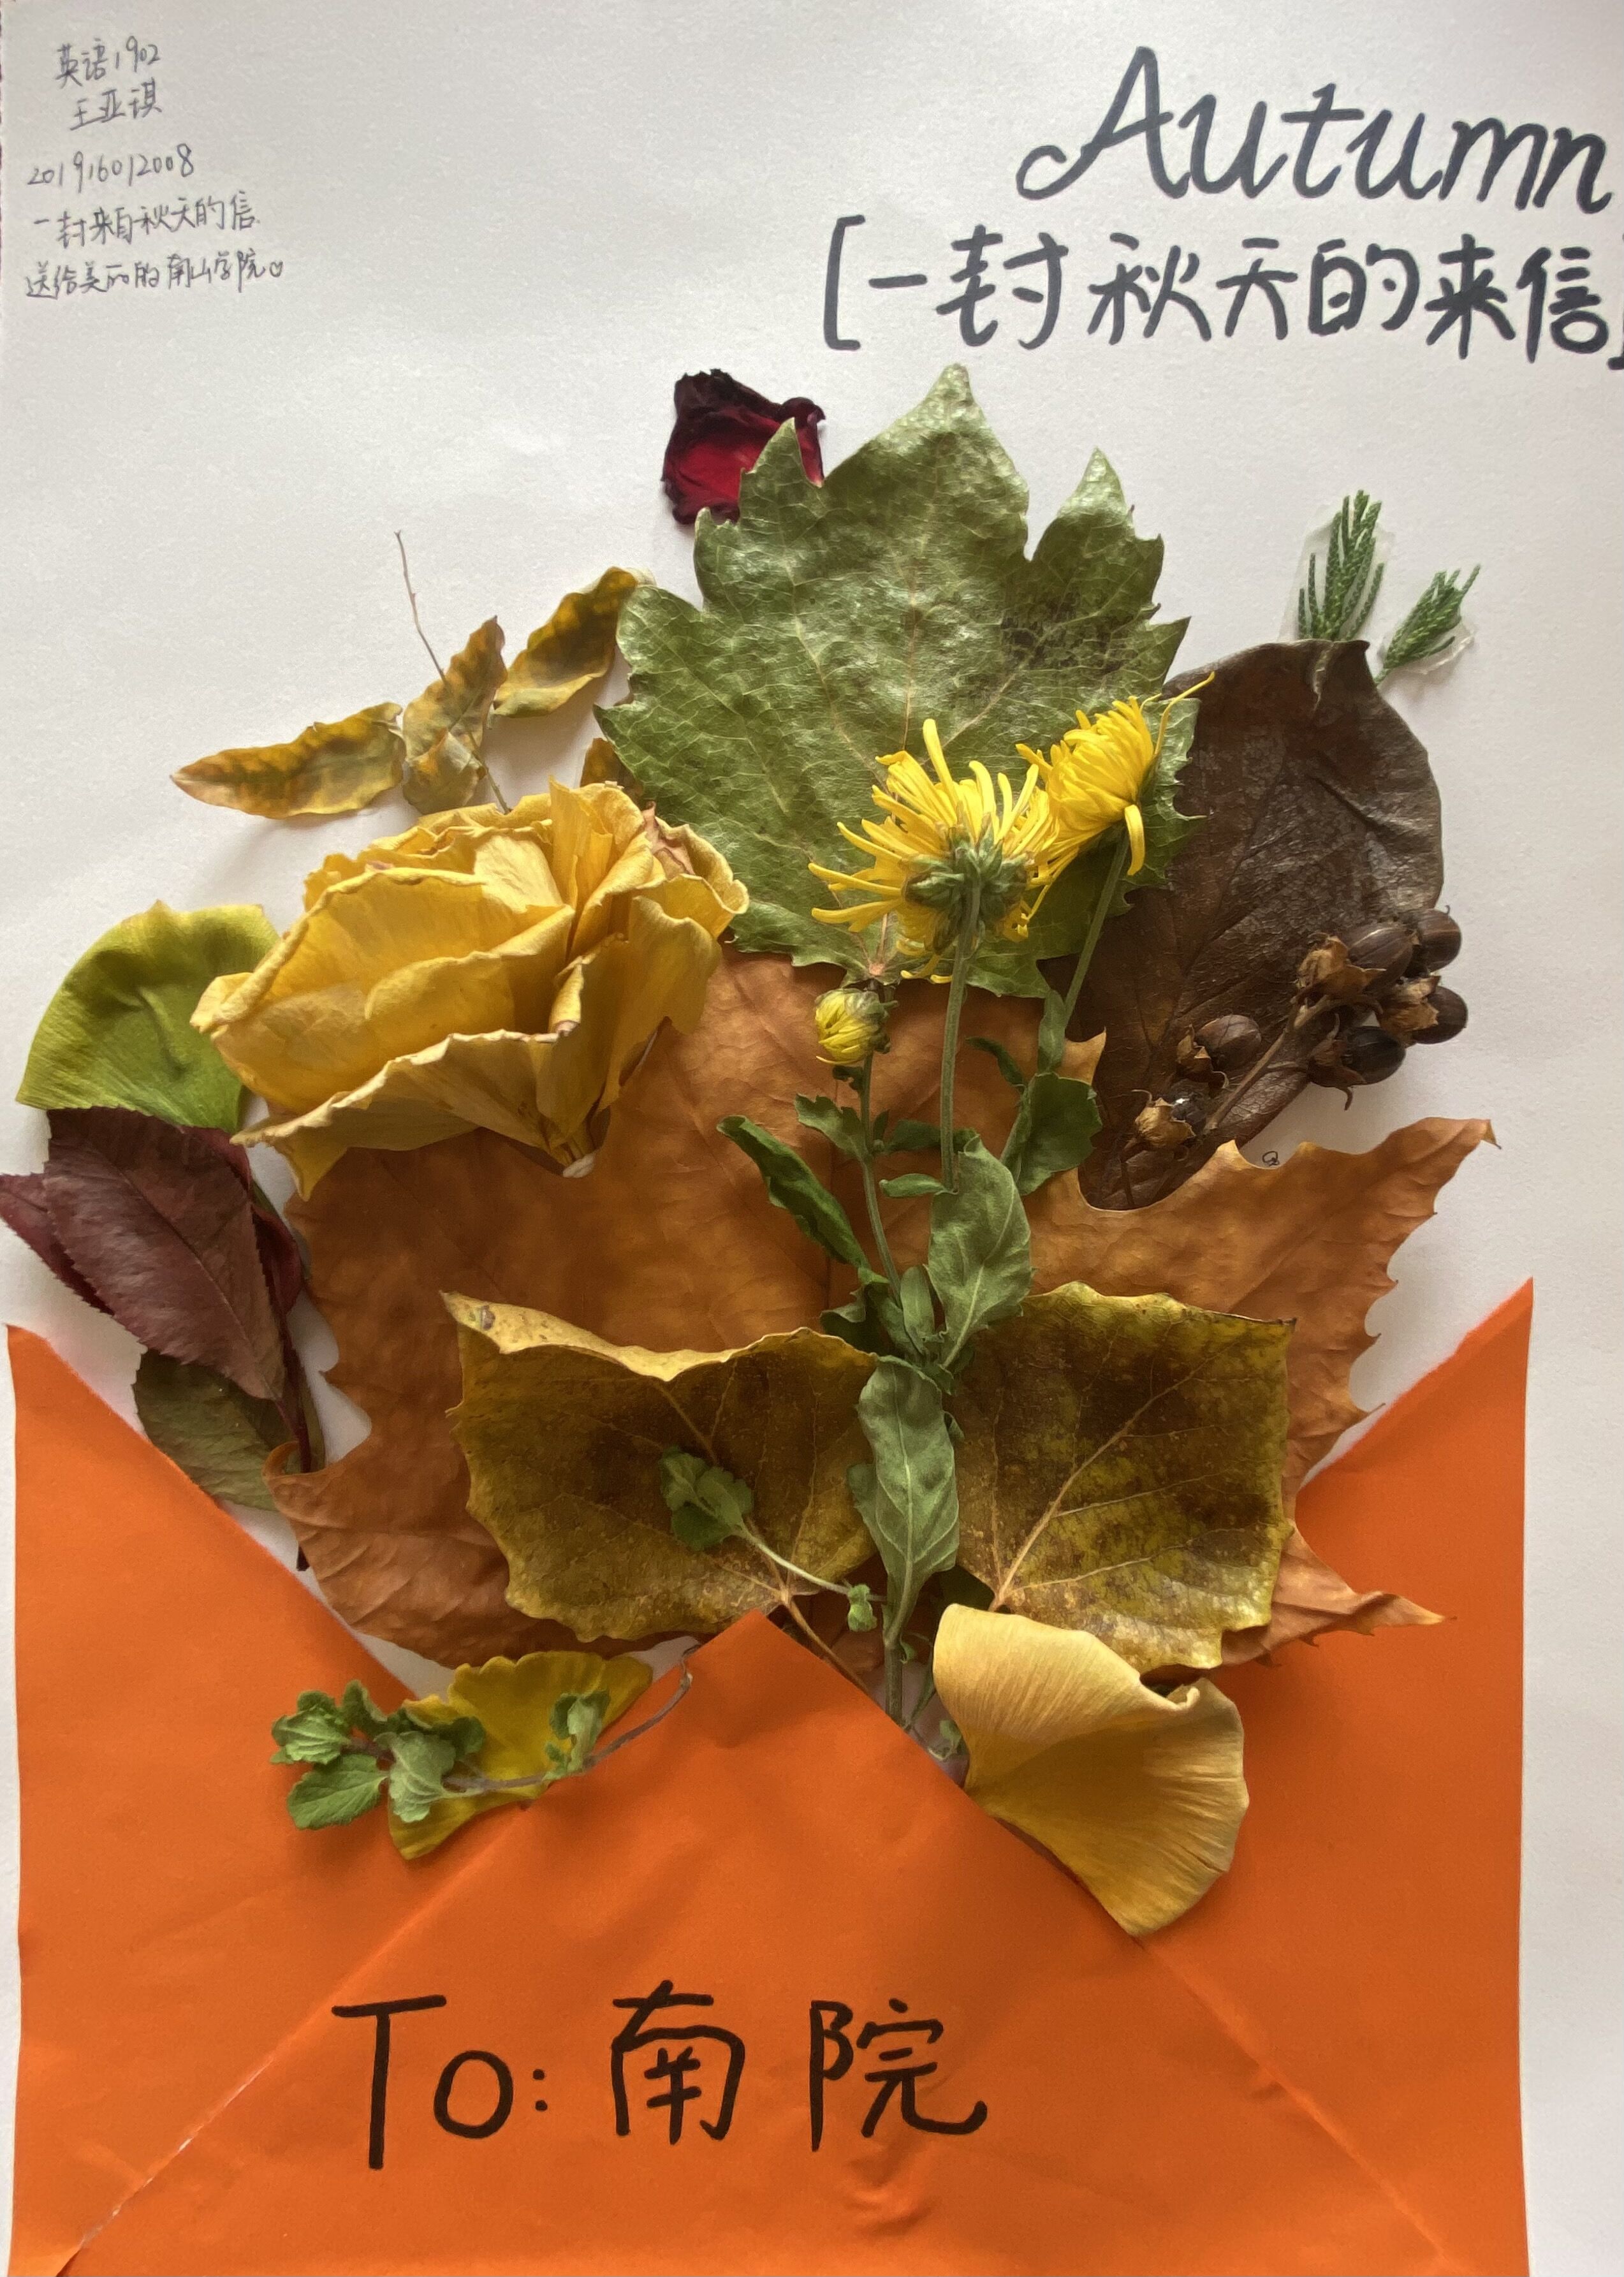 一封秋天的来信，送给美丽的南山学院和可爱的同学们。